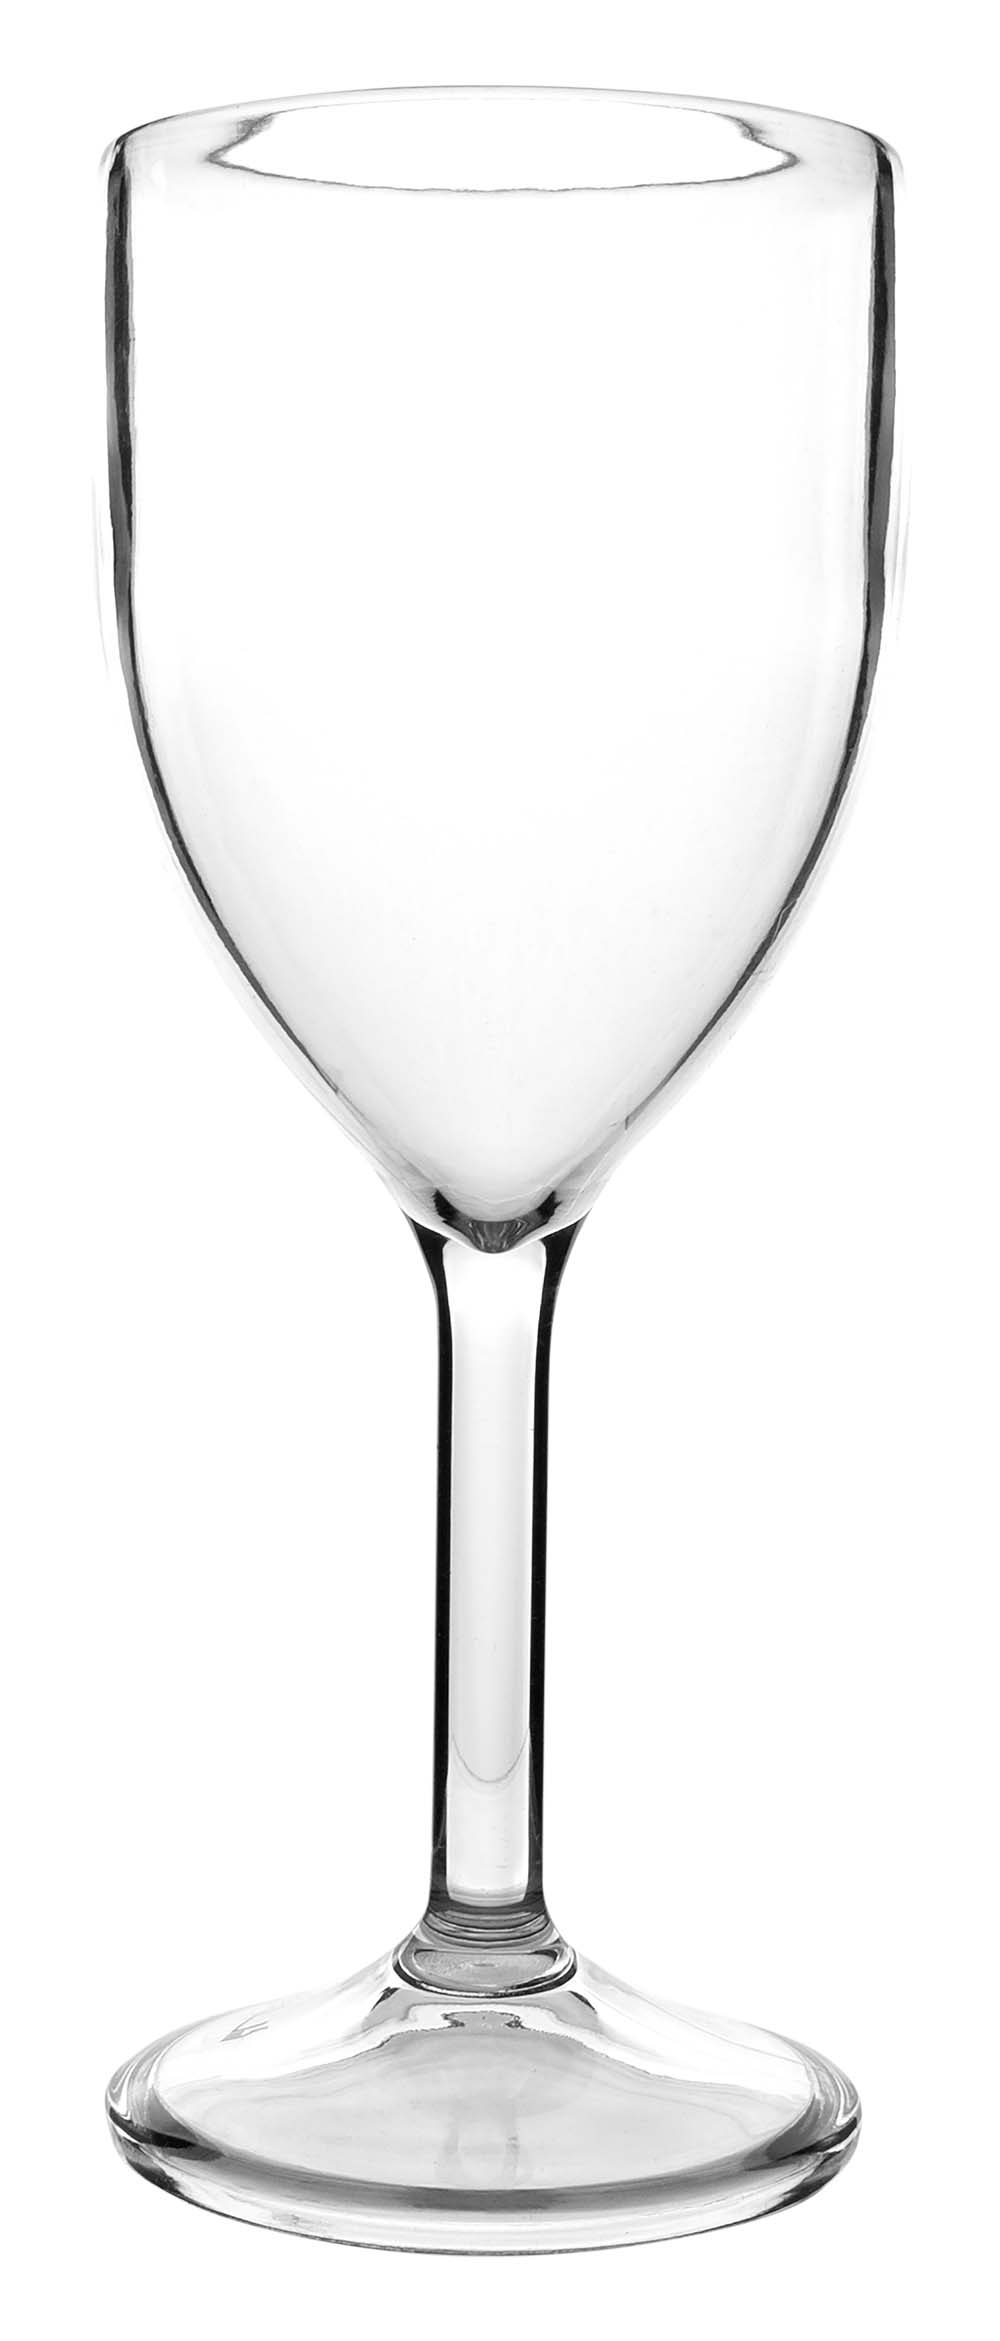 6101442 Ein besonders solides und luxuriöses Weingläser-Set. Aus 100 % Polycarbonat. Das macht die Gläser nahezu unzerbrechlich, leicht und kratzbeständig. Auch diese Gläser sind spülmaschinenfest. Verpackung mit 2 Stück.